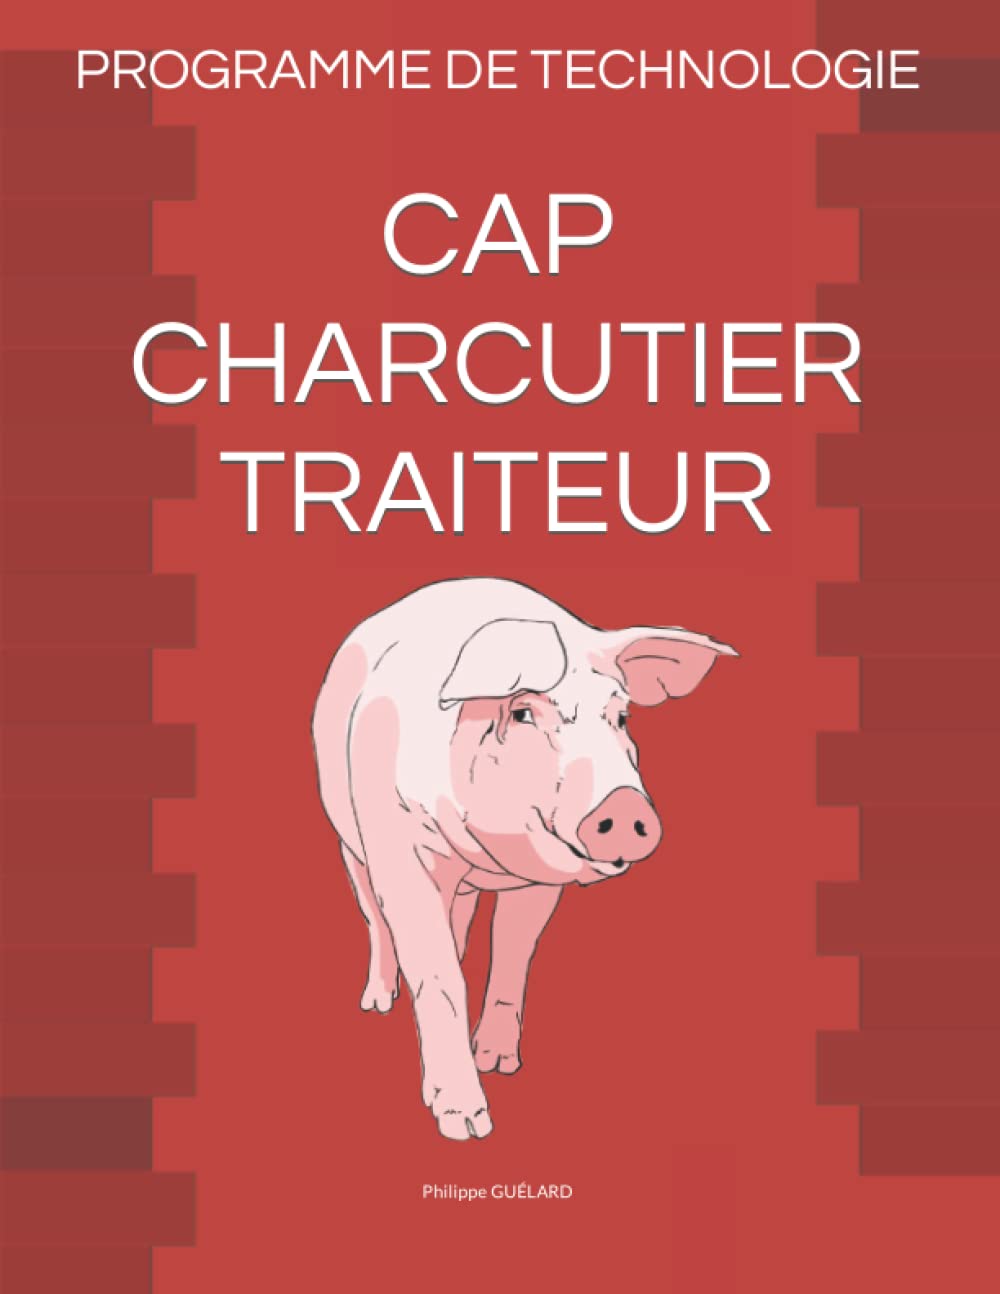 Programme de Technologie Cap Charcutier Traiteur (Philippe Guelard)